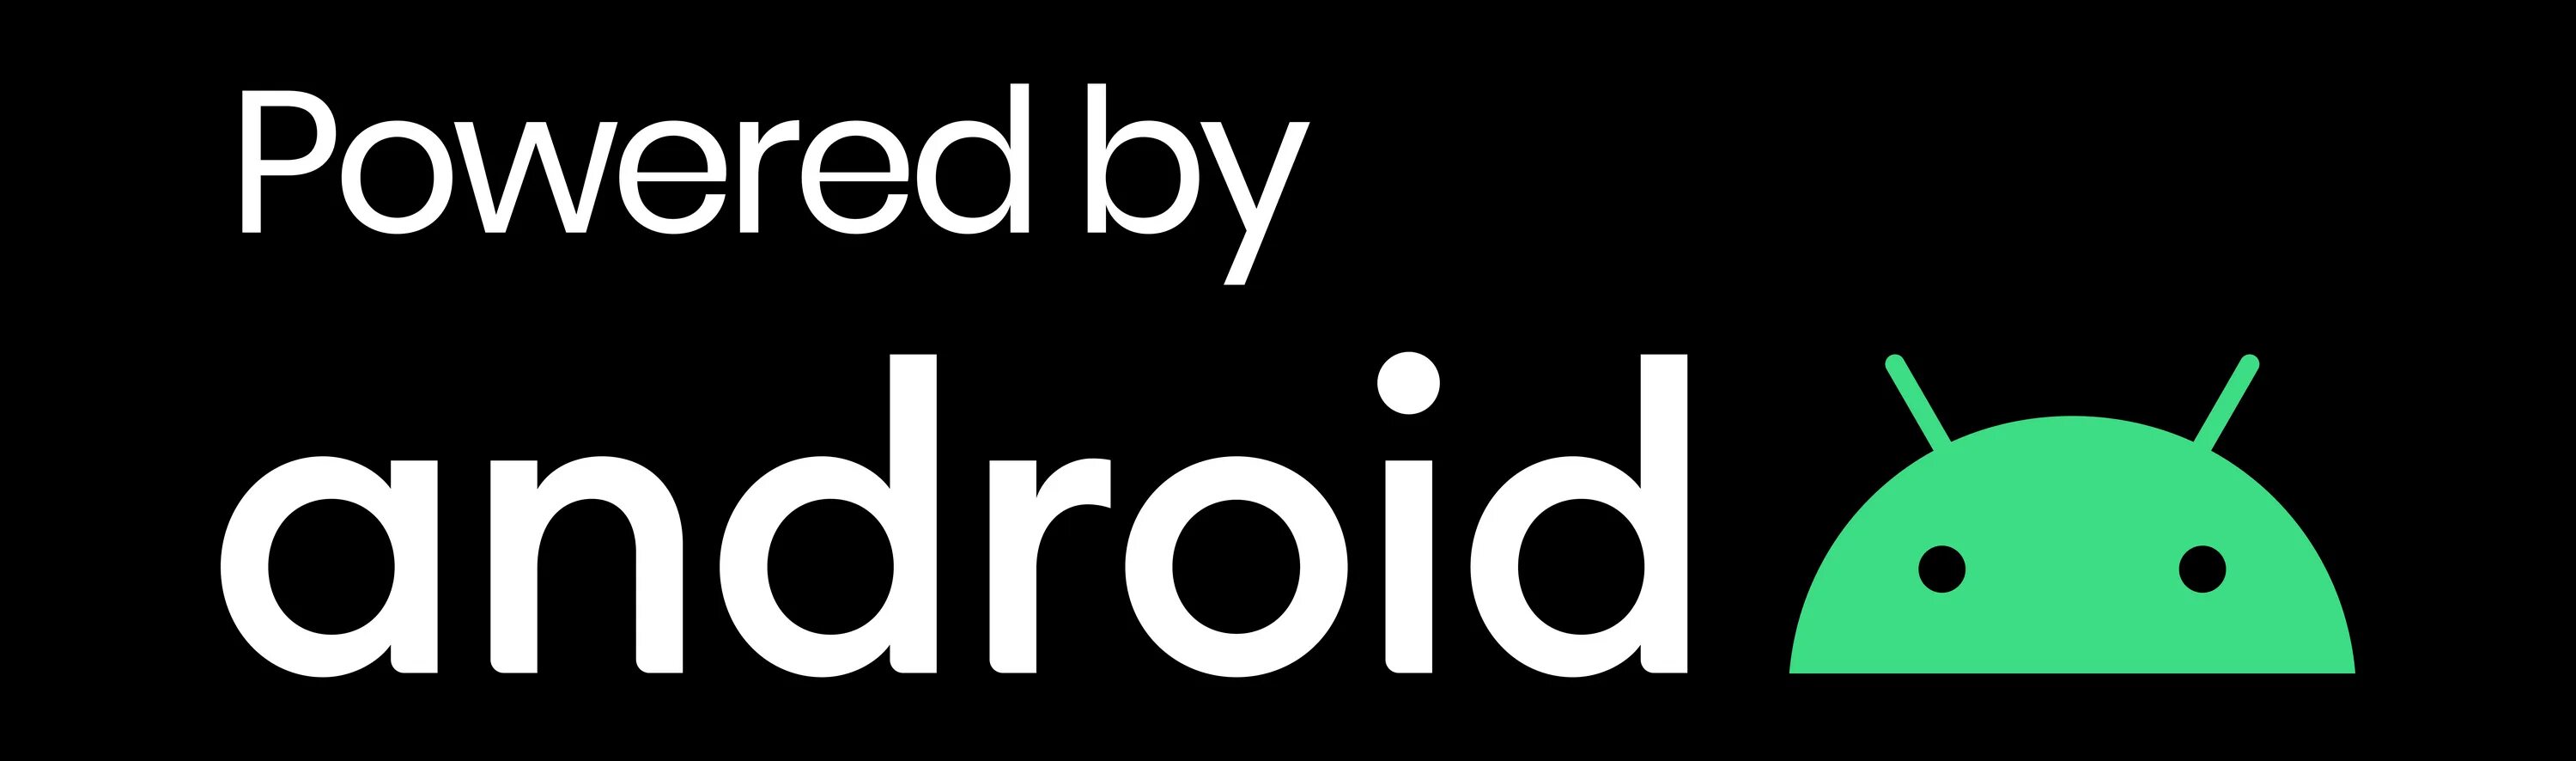 Андроид бай. By Android. Логотип Powered by Android. Телефон Powered by Android. Google Powered by Android.